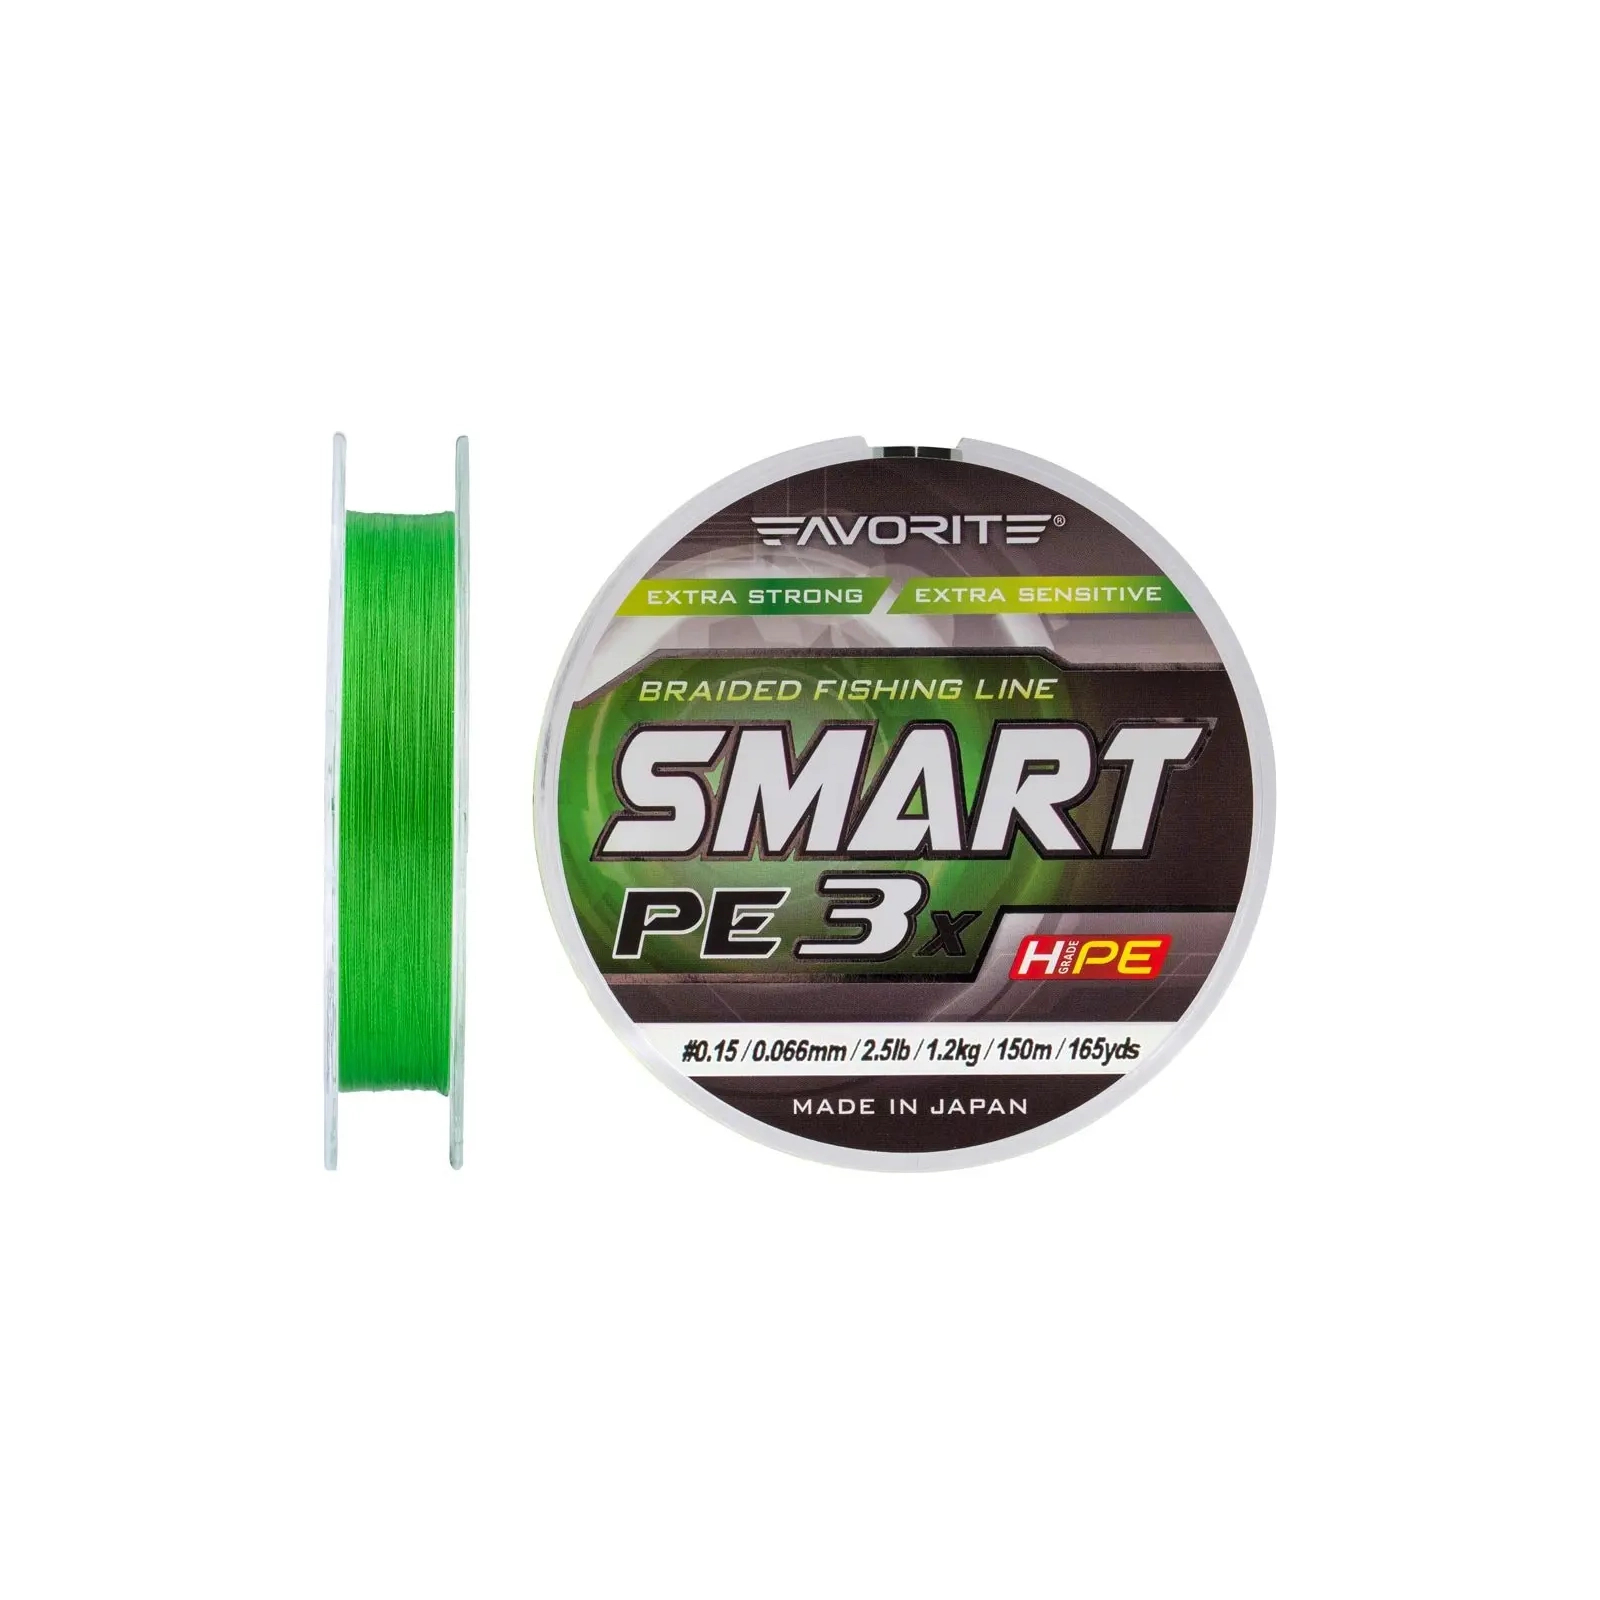 Шнур Favorite Smart PE 3x 150м 0.15/0.066mm 2.5lb/1.2kg Light Green (1693.10.60) зображення 2